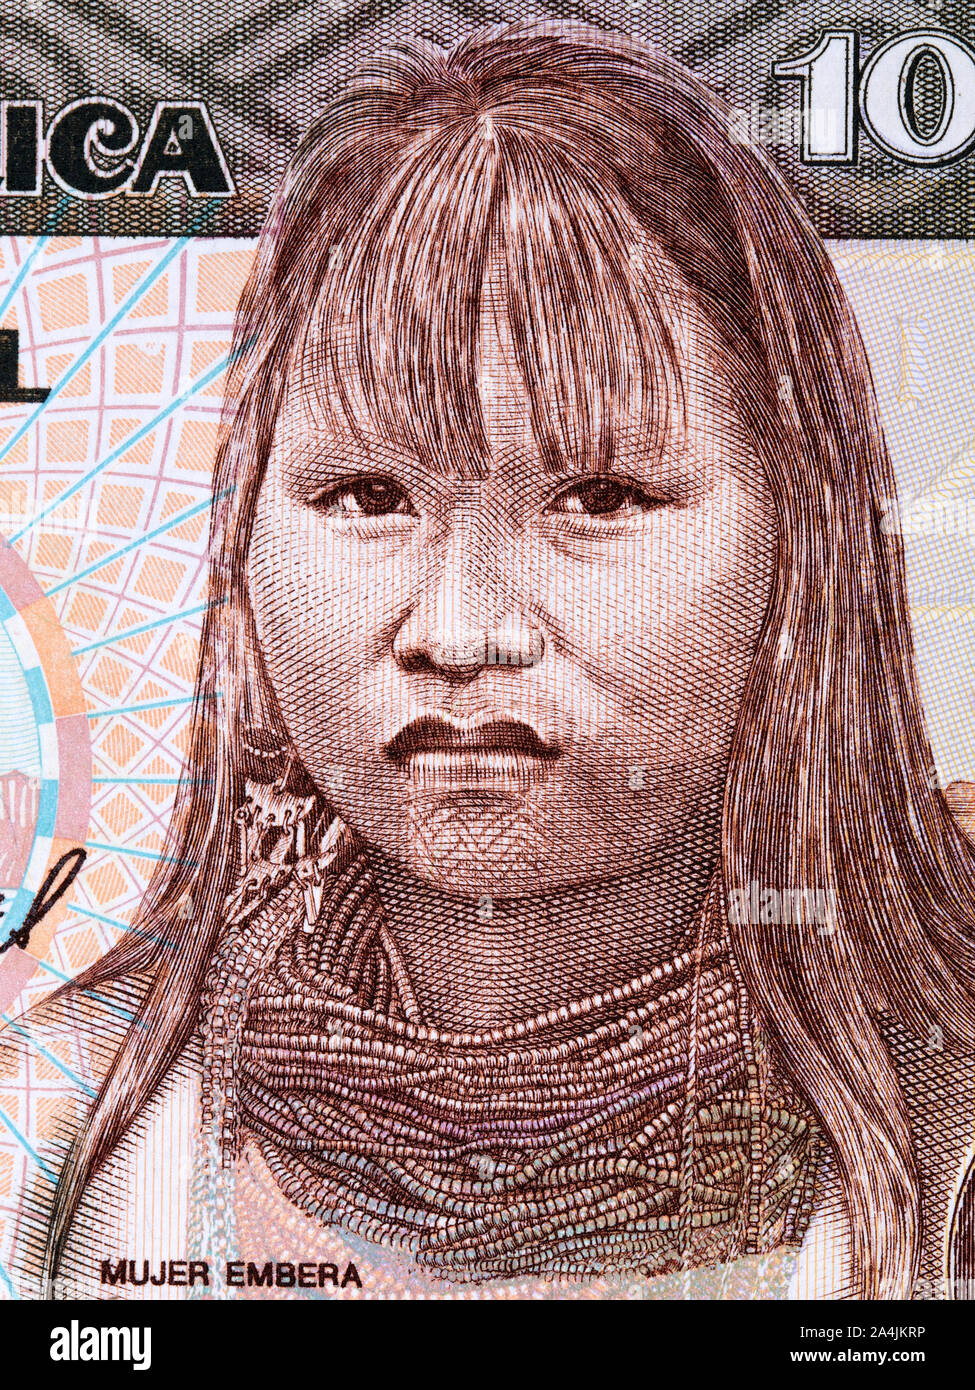 Mujer Embera ein Porträt von kolumbianischen Geld Stockfoto